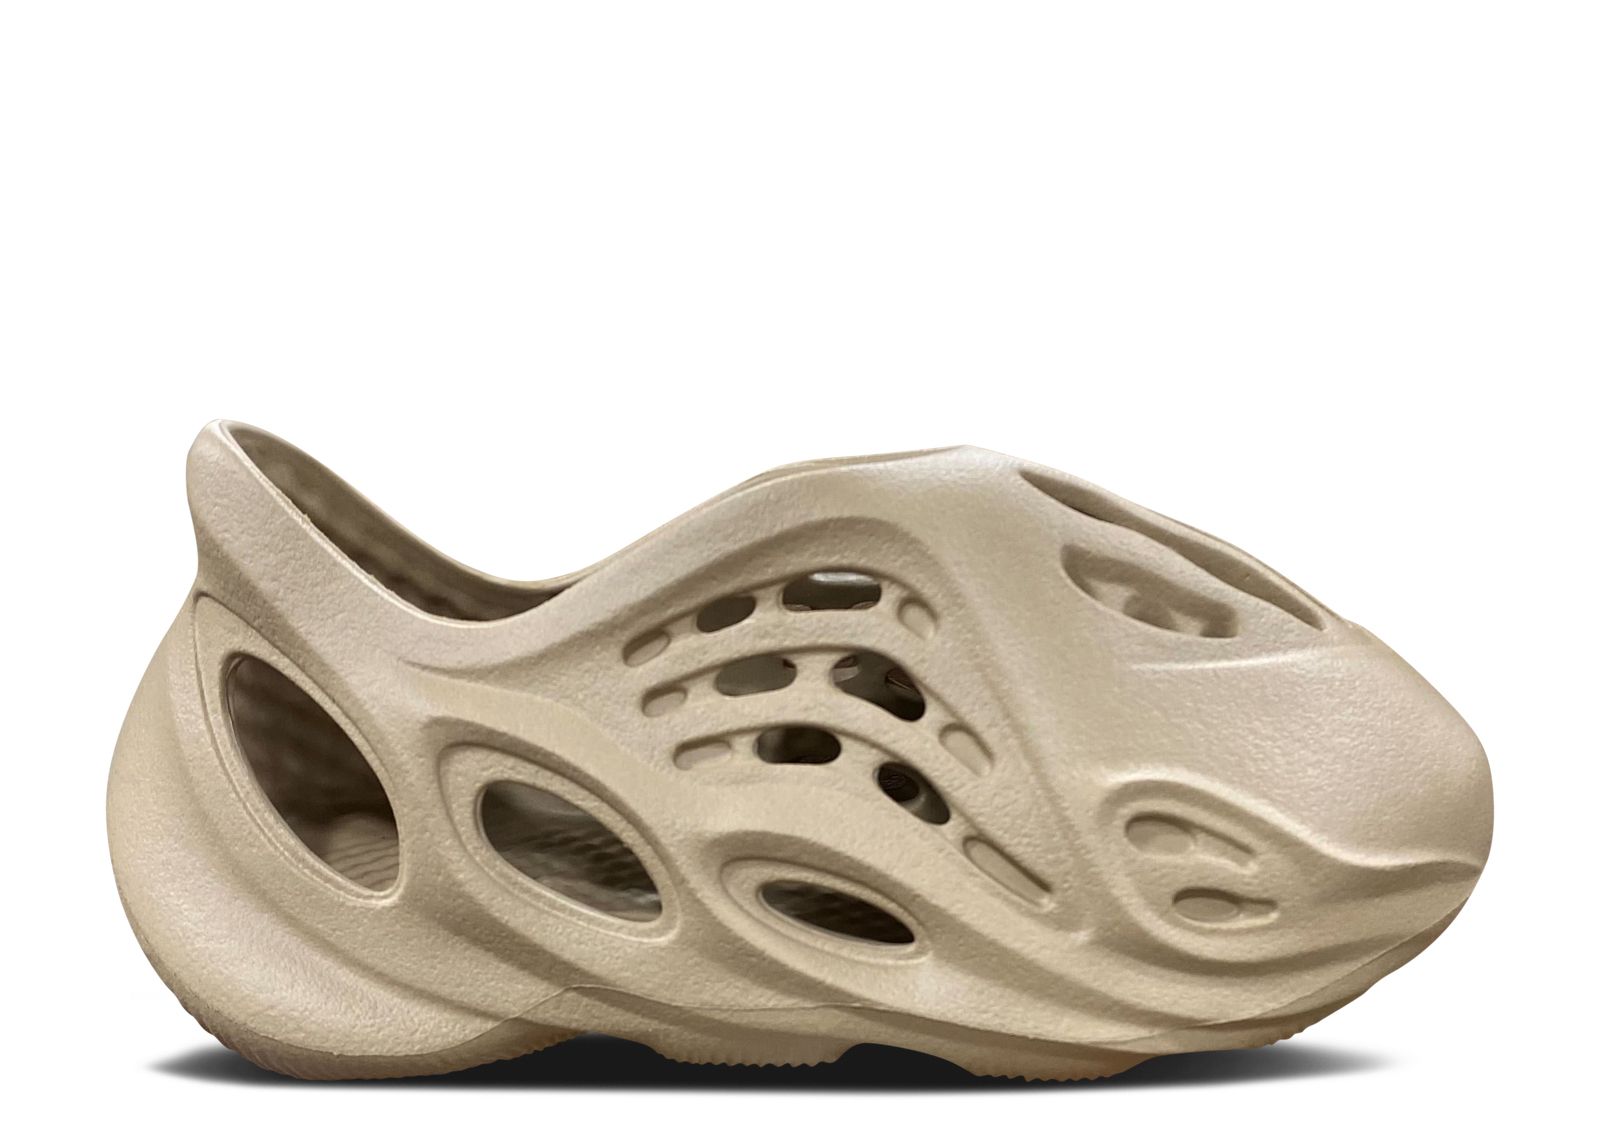 Кроссовки adidas Yeezy Foam Runner Kids 'Mist', коричневый